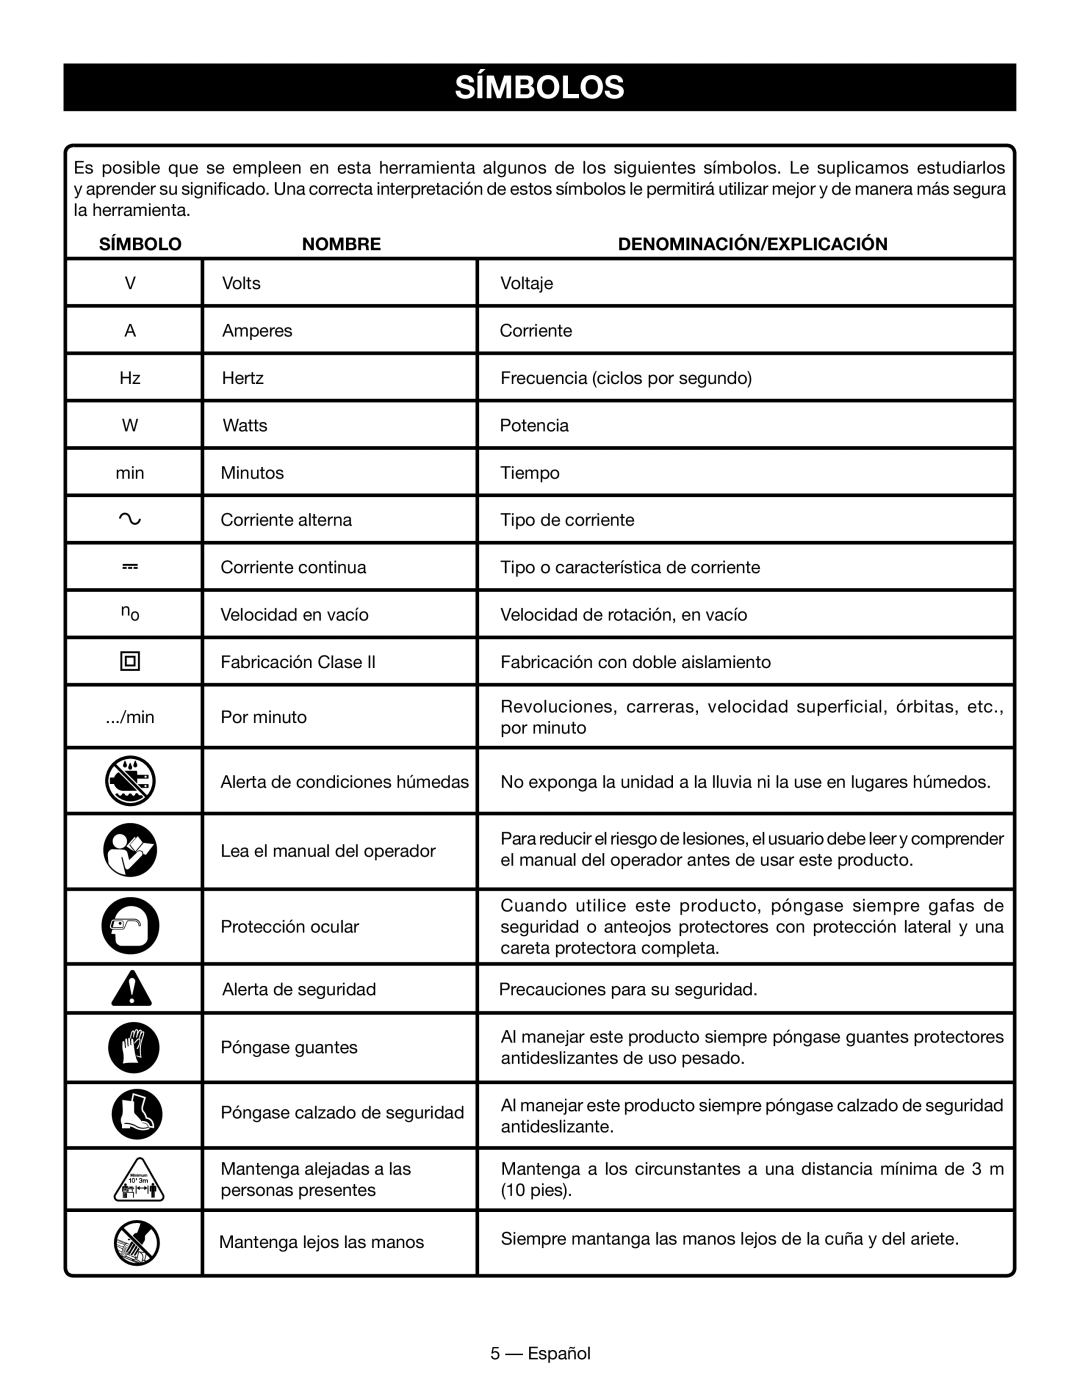 Homelite UT49102 manuel dutilisation Símbolos, Nombre, Denominación/Explicación 